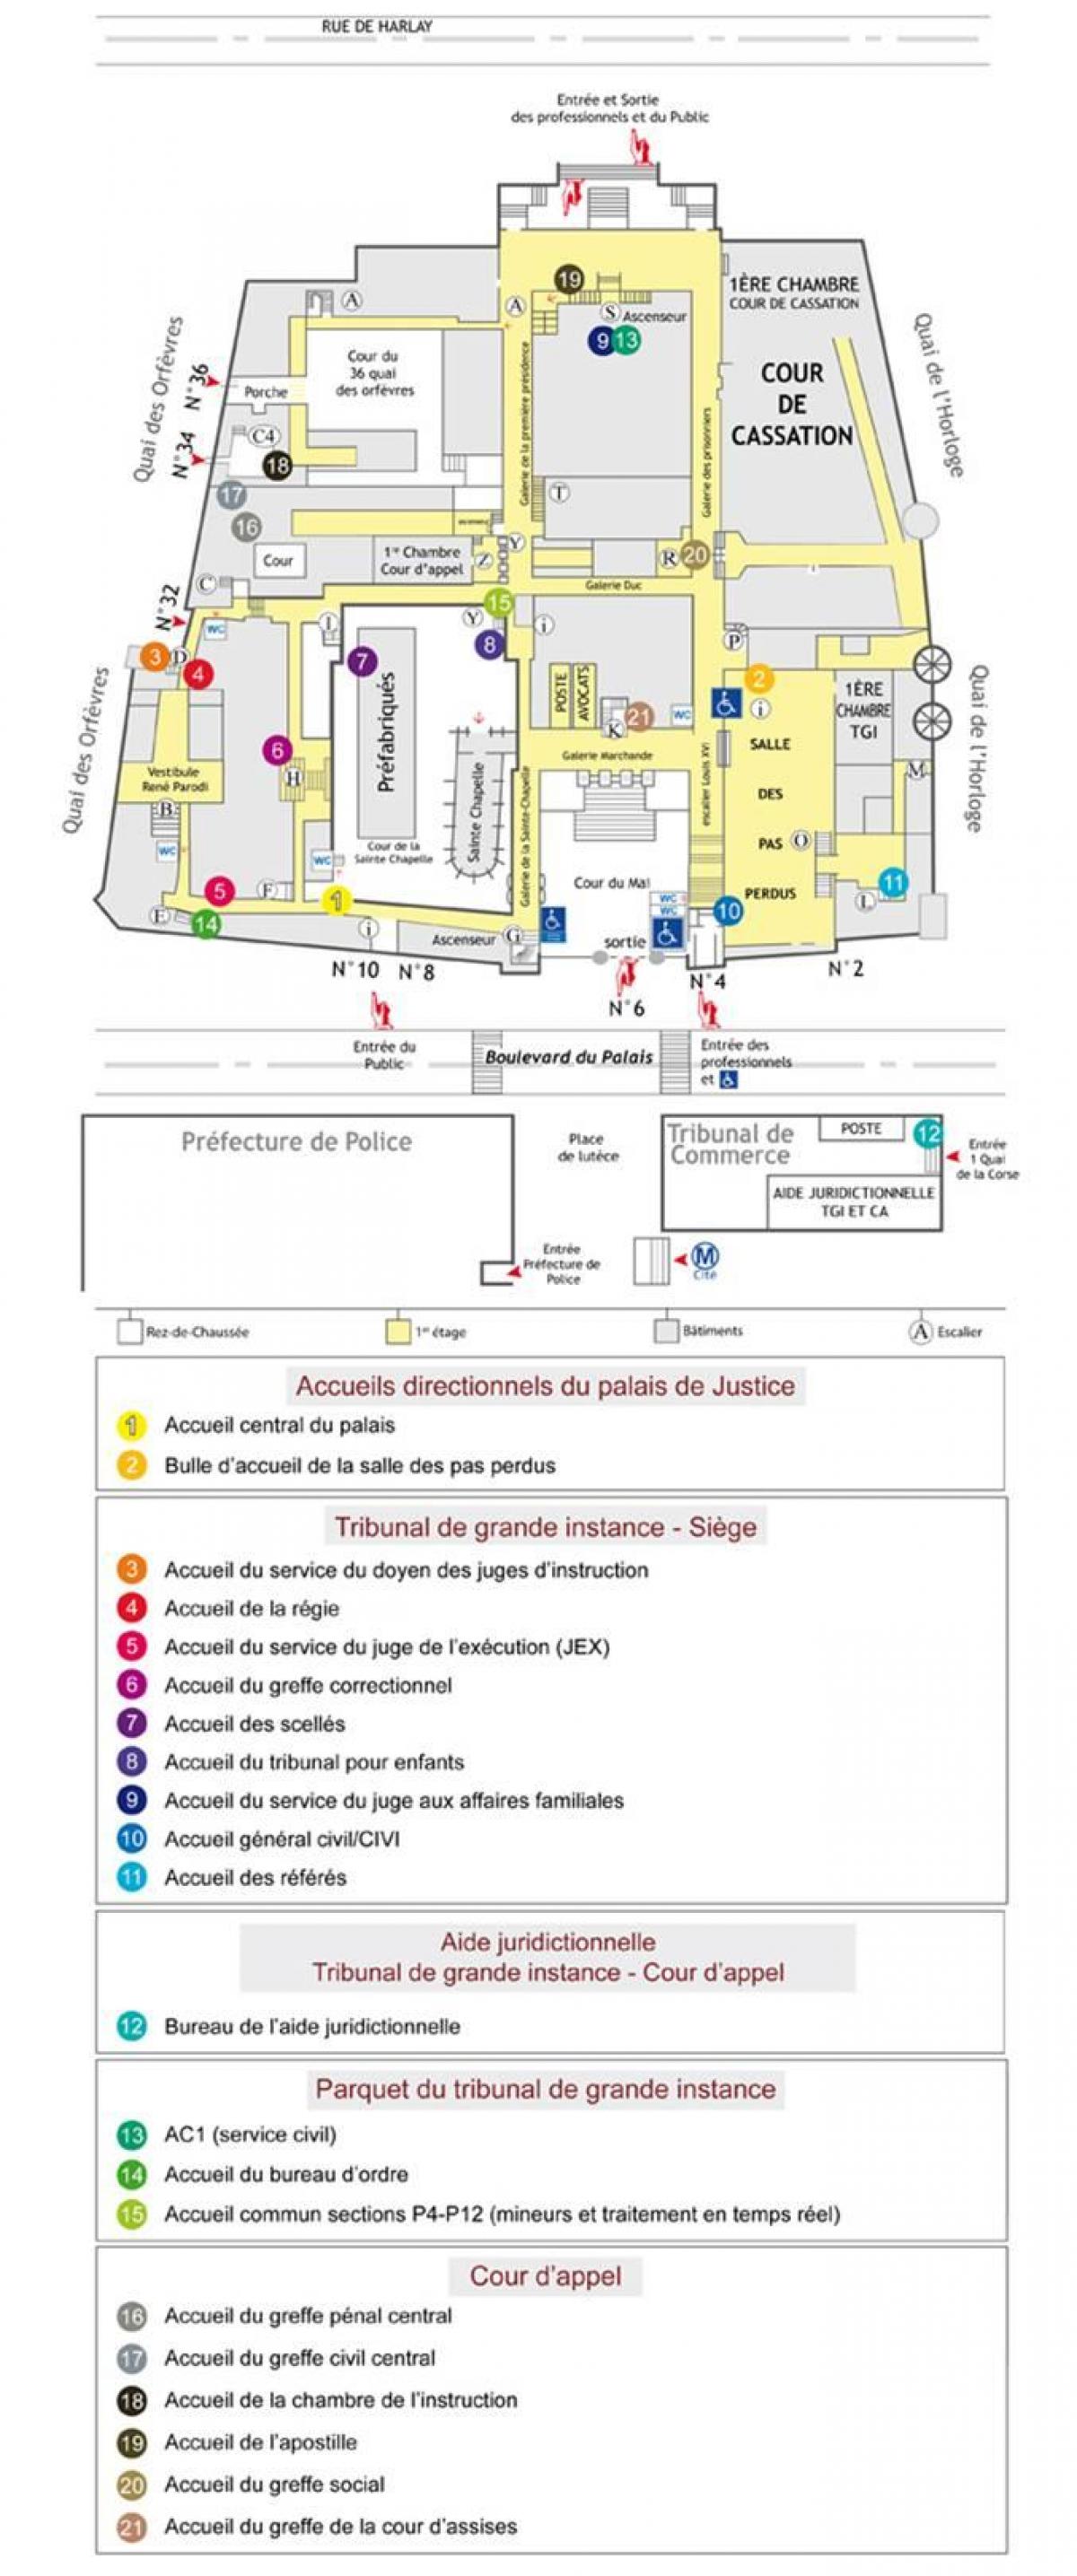 Mapa do Palácio de Justiça de Paris